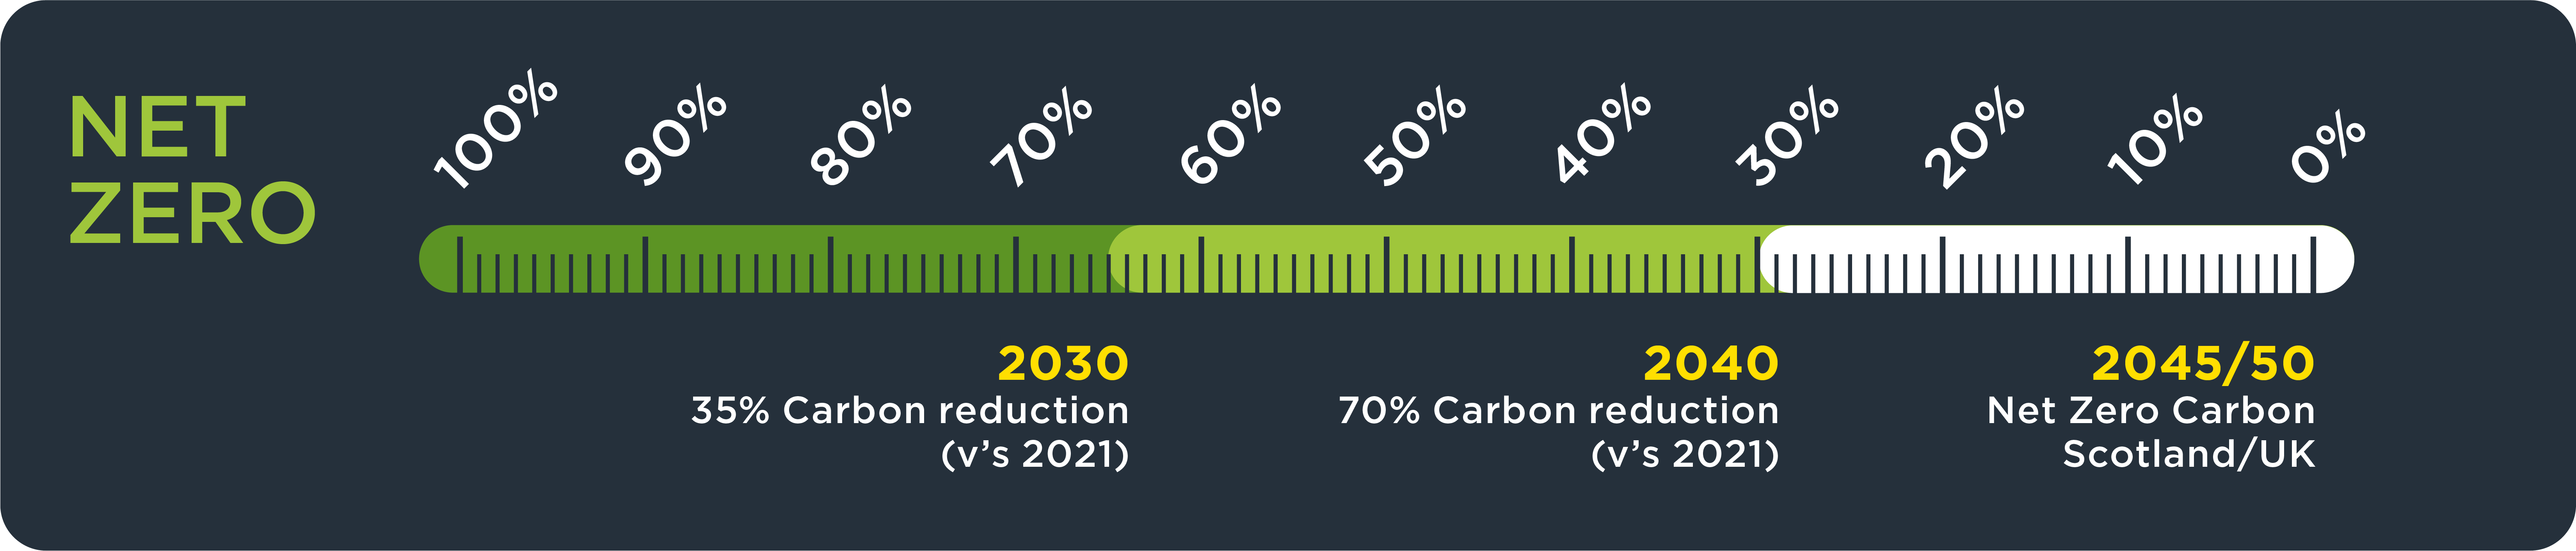 carbon reduction bar